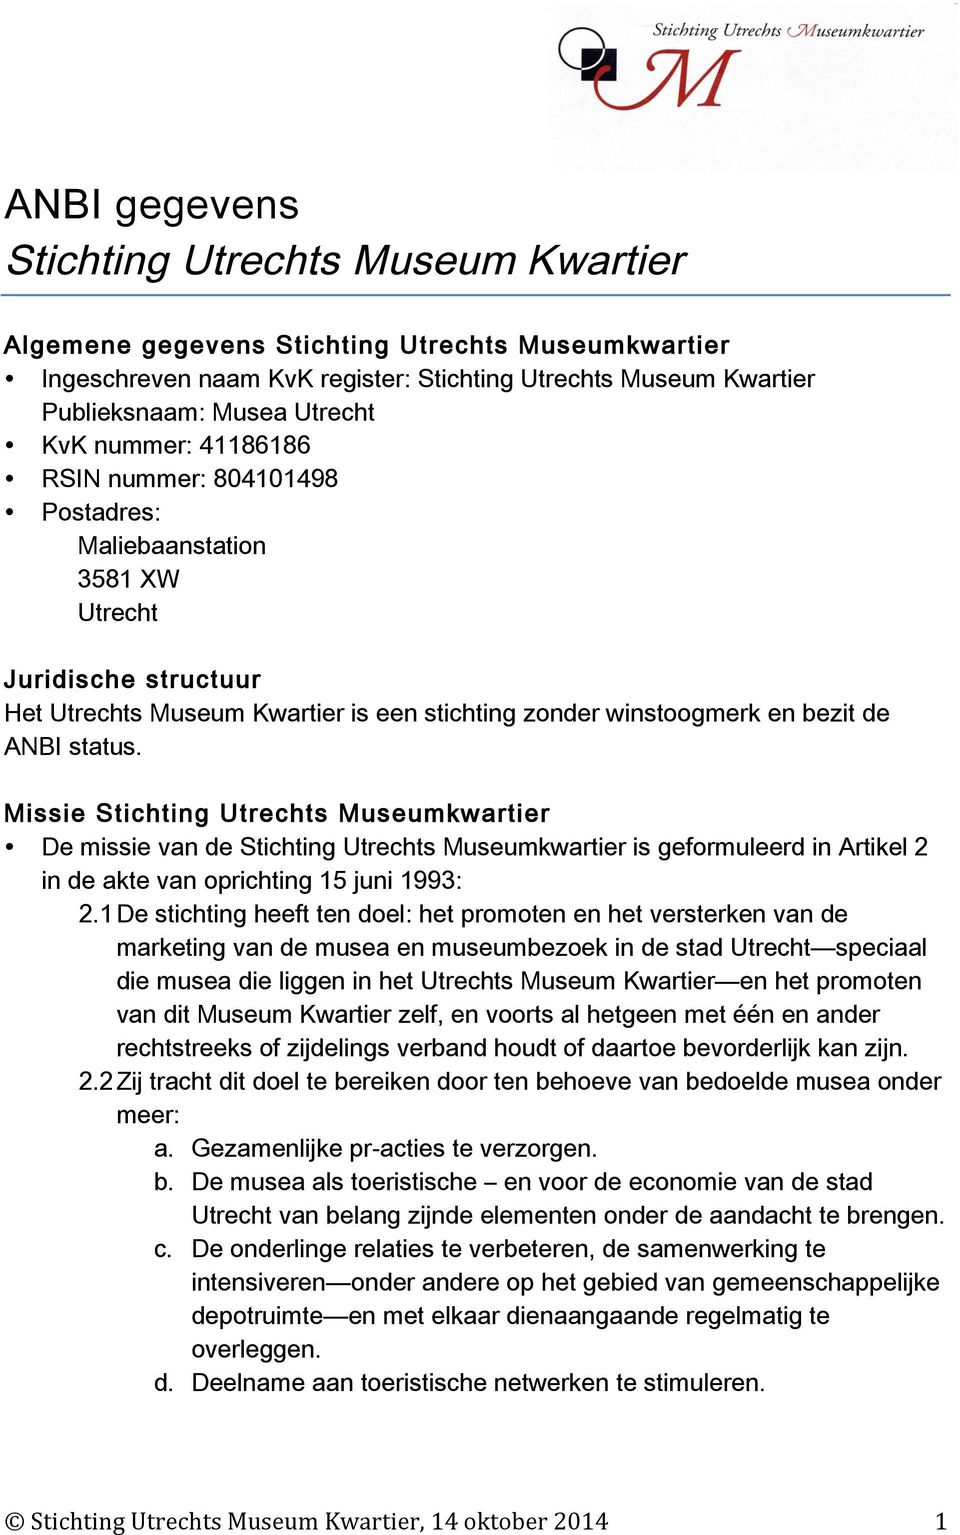 Missie Stichting Utrechts Museumkwartier De missie van de Stichting Utrechts Museumkwartier is geformuleerd in Artikel 2 in de akte van oprichting 15 juni 1993: 2.